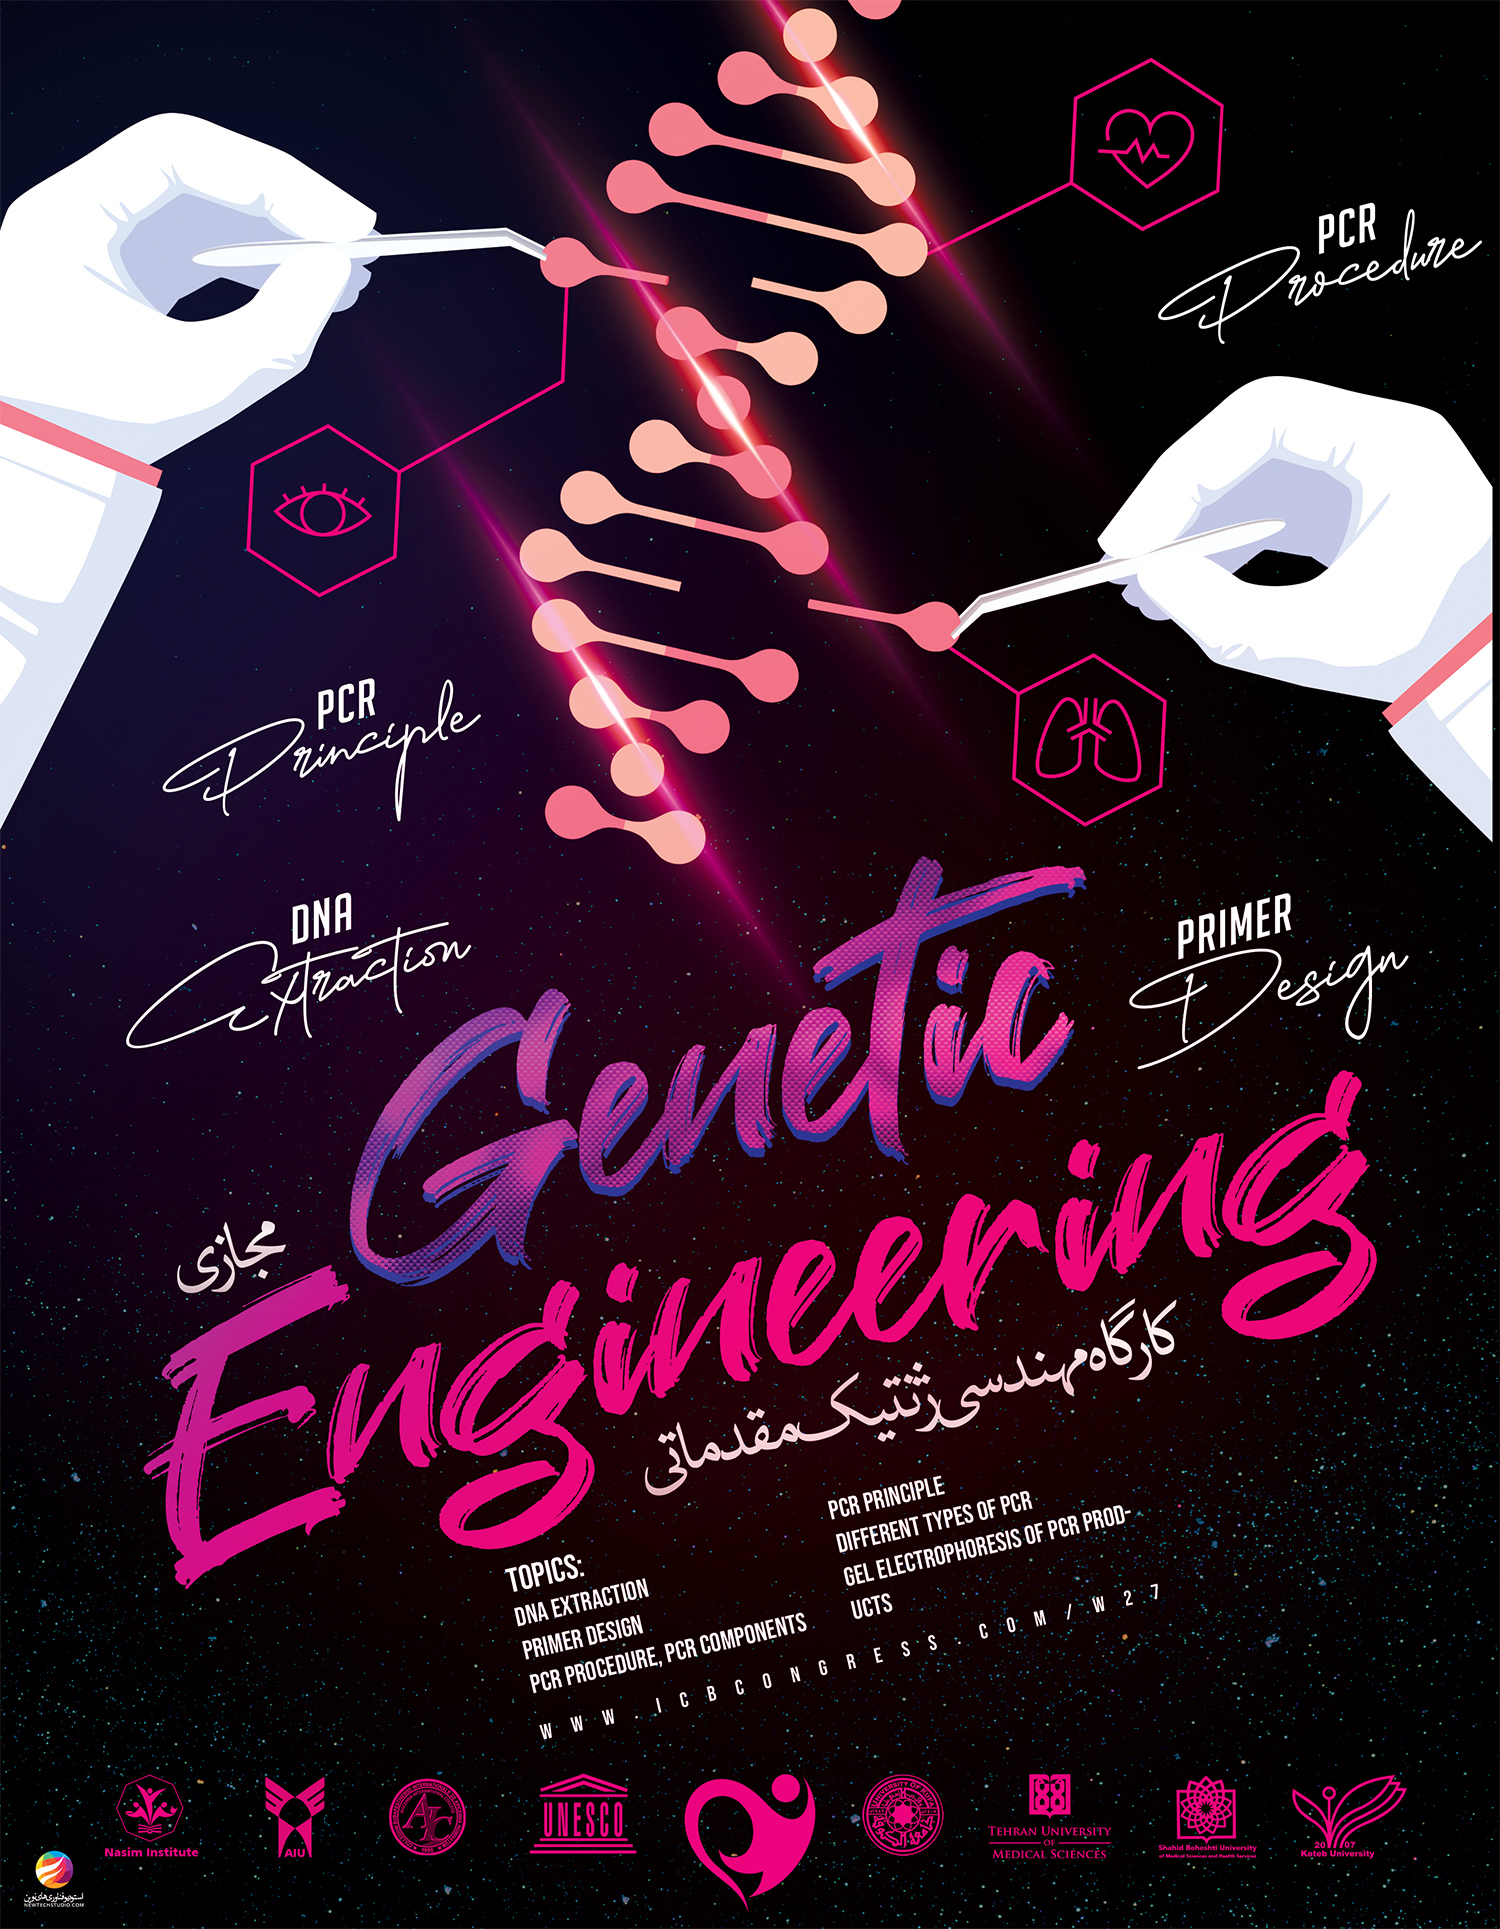 کارگاه مهندسی ژنتیک مقدماتی (آنلاین)